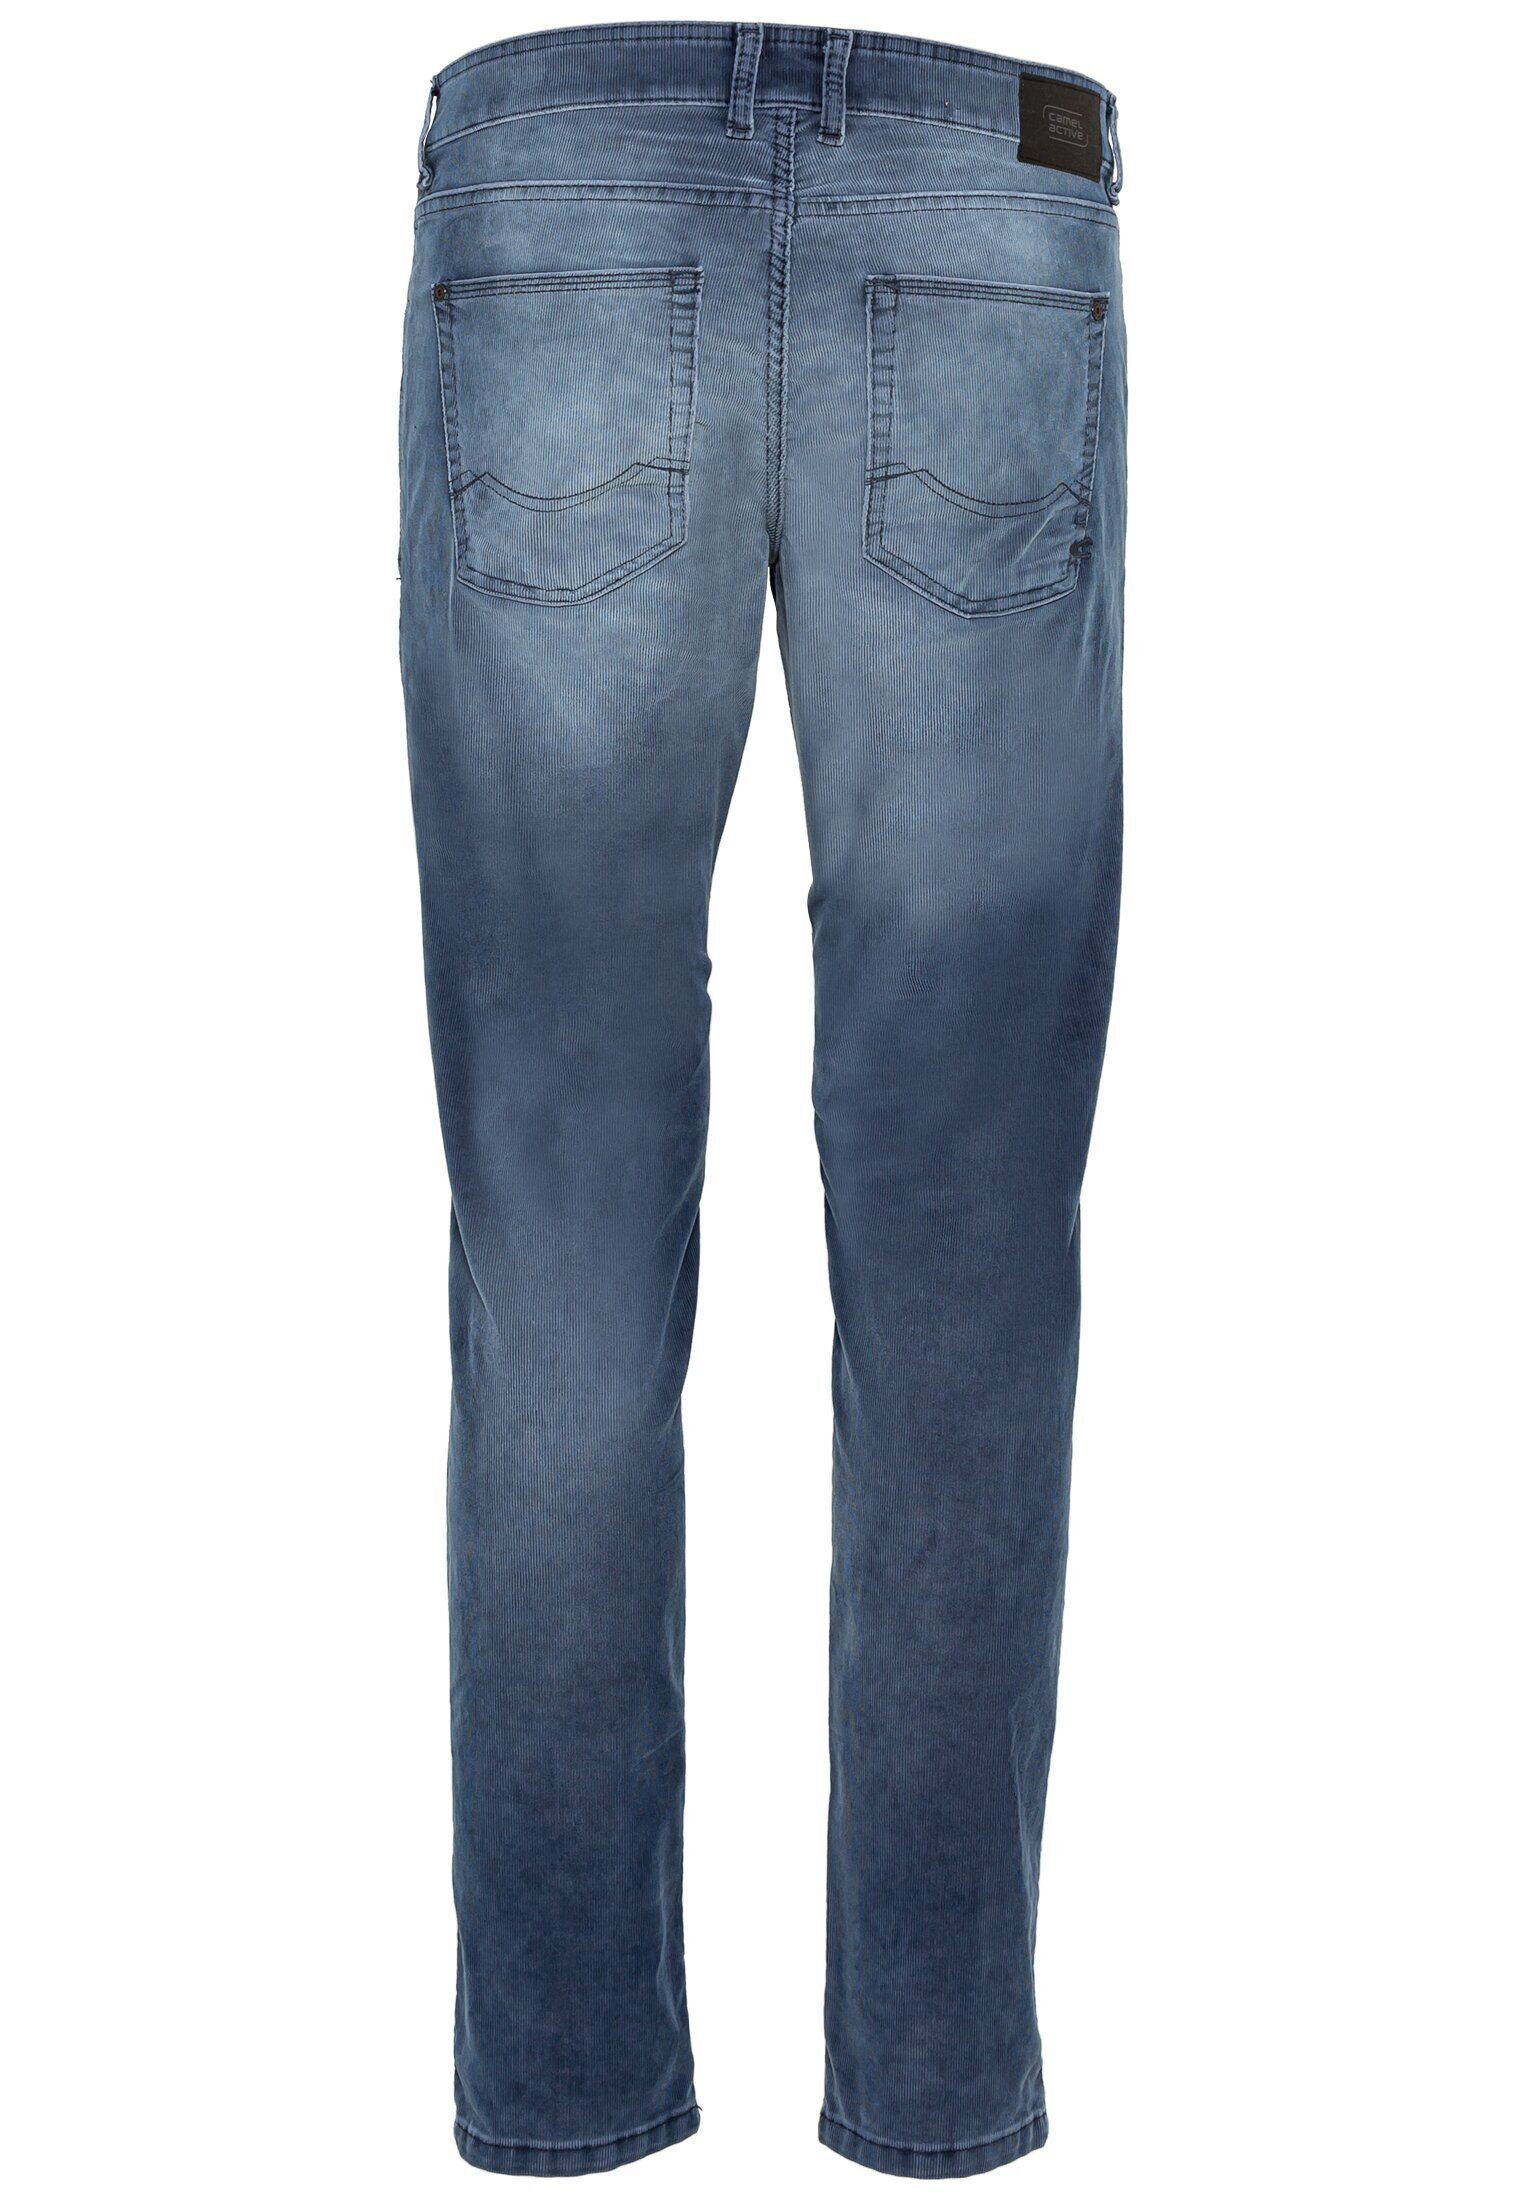 Blau active Fit Cordhose 5-Pocket-Jeans camel Slim